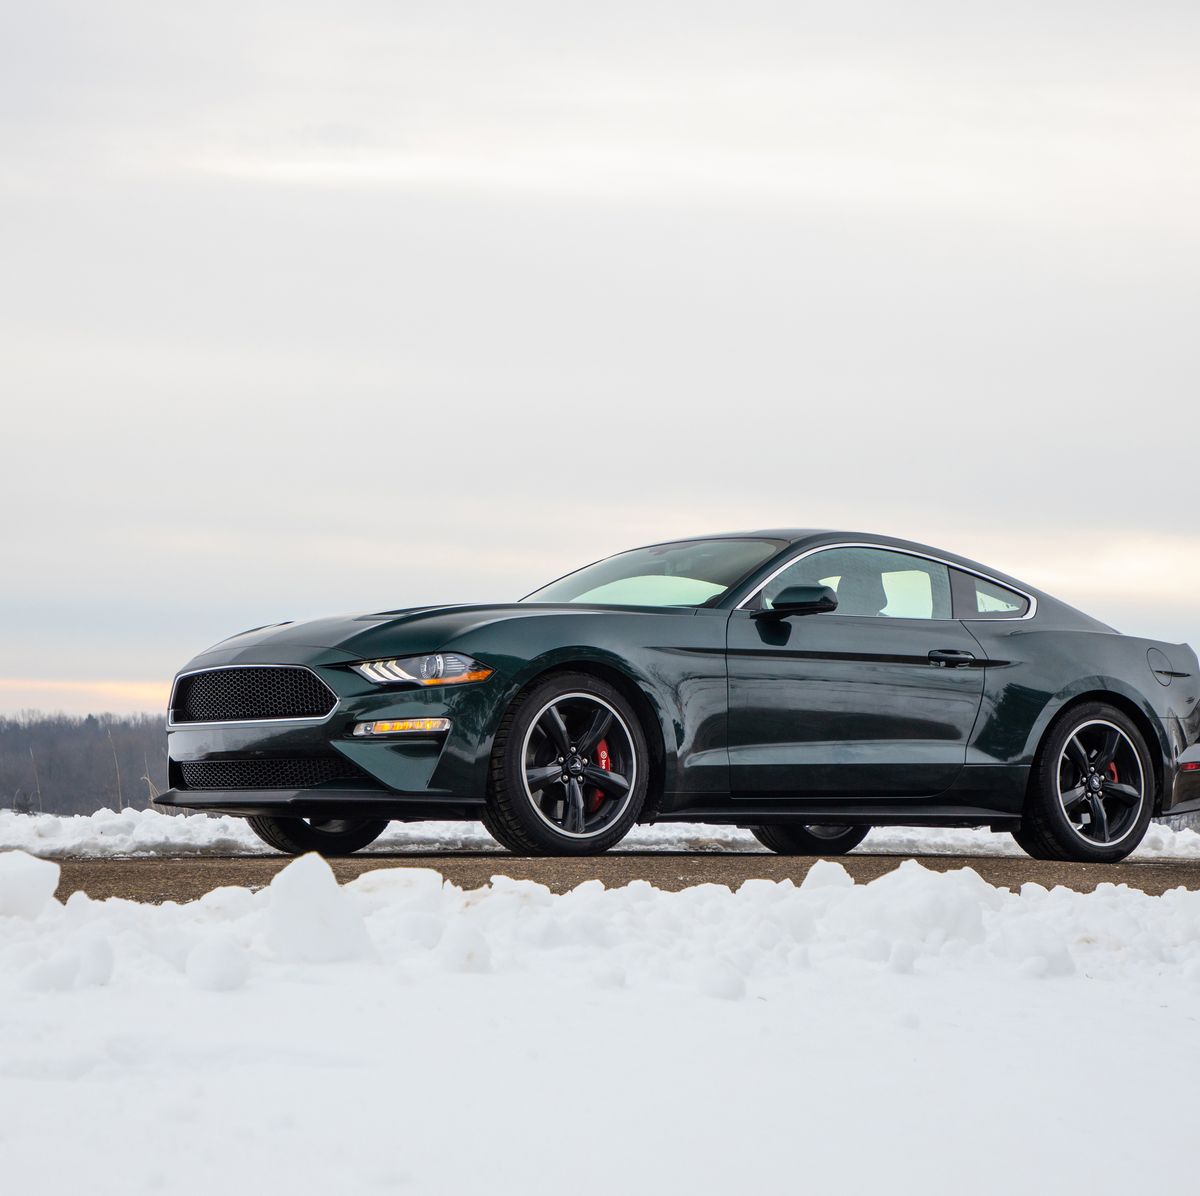 2019 Ford Mustang Bullitt Long-Term Road Test: 20,000-Mile Update